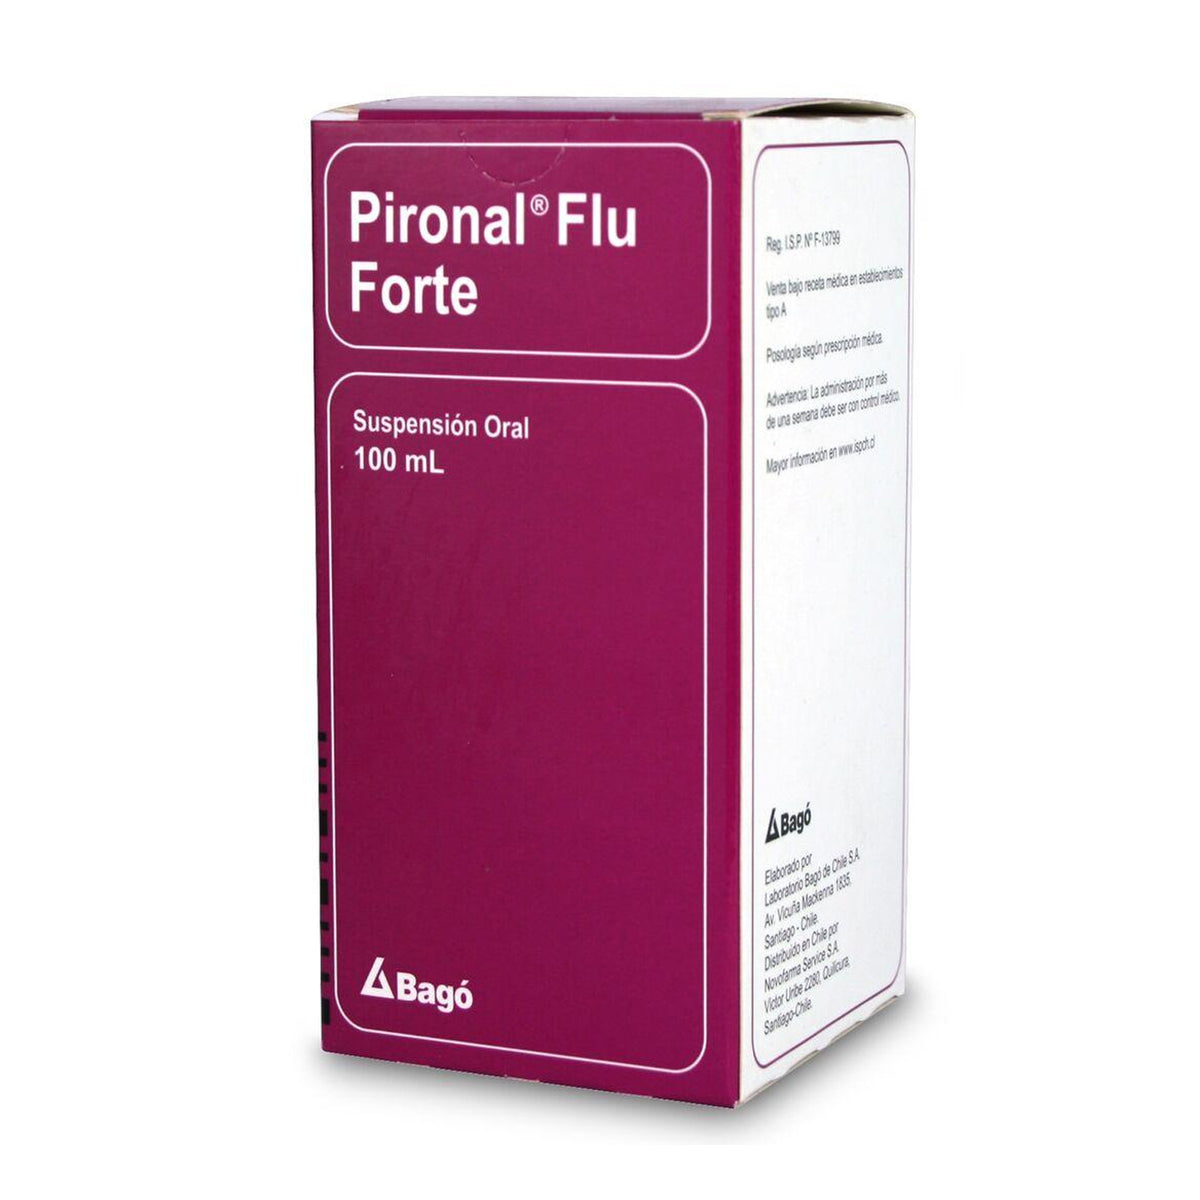 Pironal Flu Forte Suspensión Oral